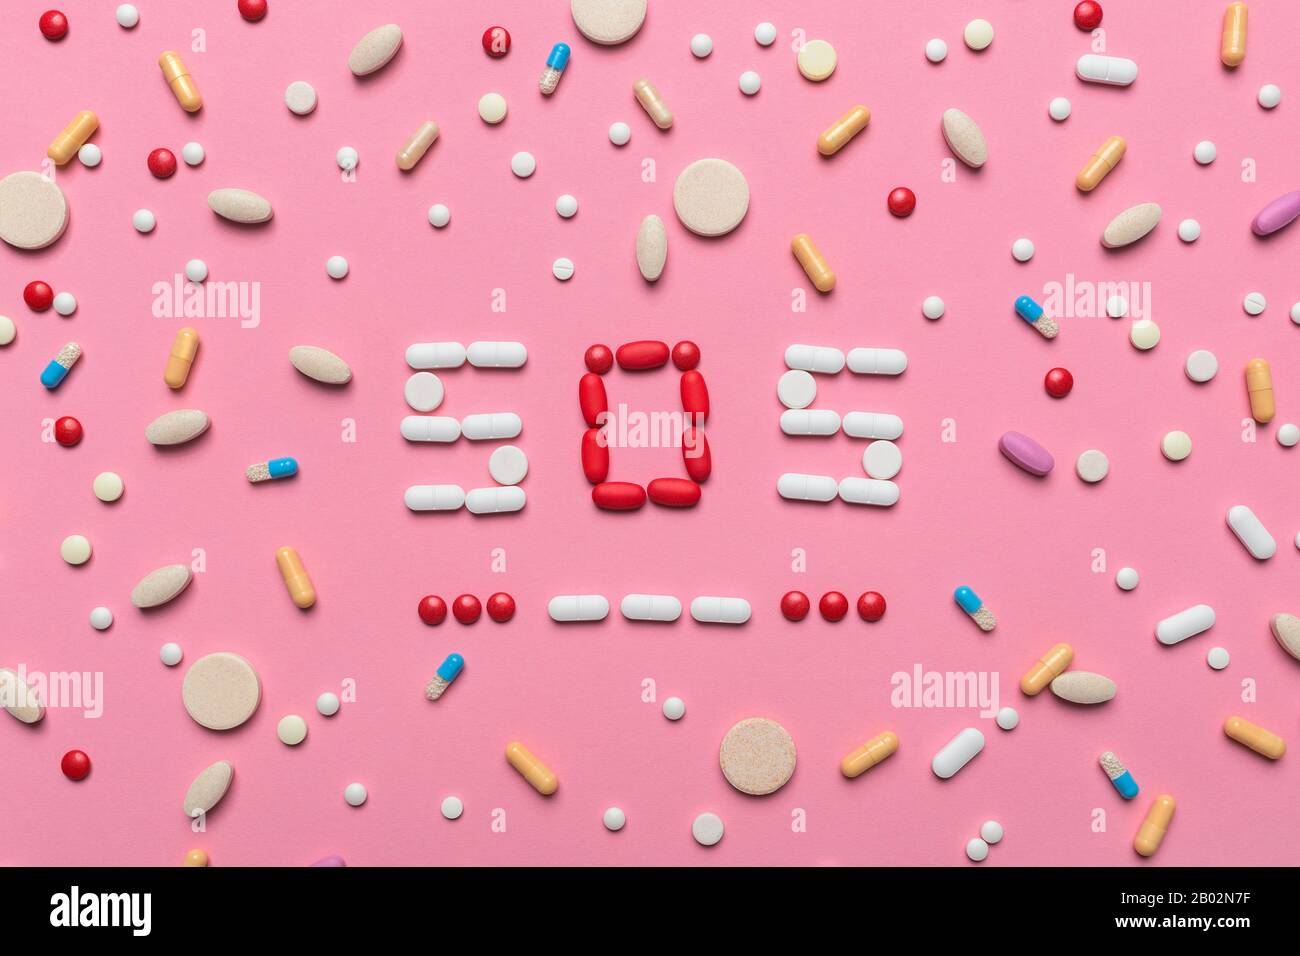 SOS en morse avec les médicaments et les pilules, vue du dessus de l'image conceptuelle mise à plat de toxicomanie et l'abus de médicaments Banque D'Images